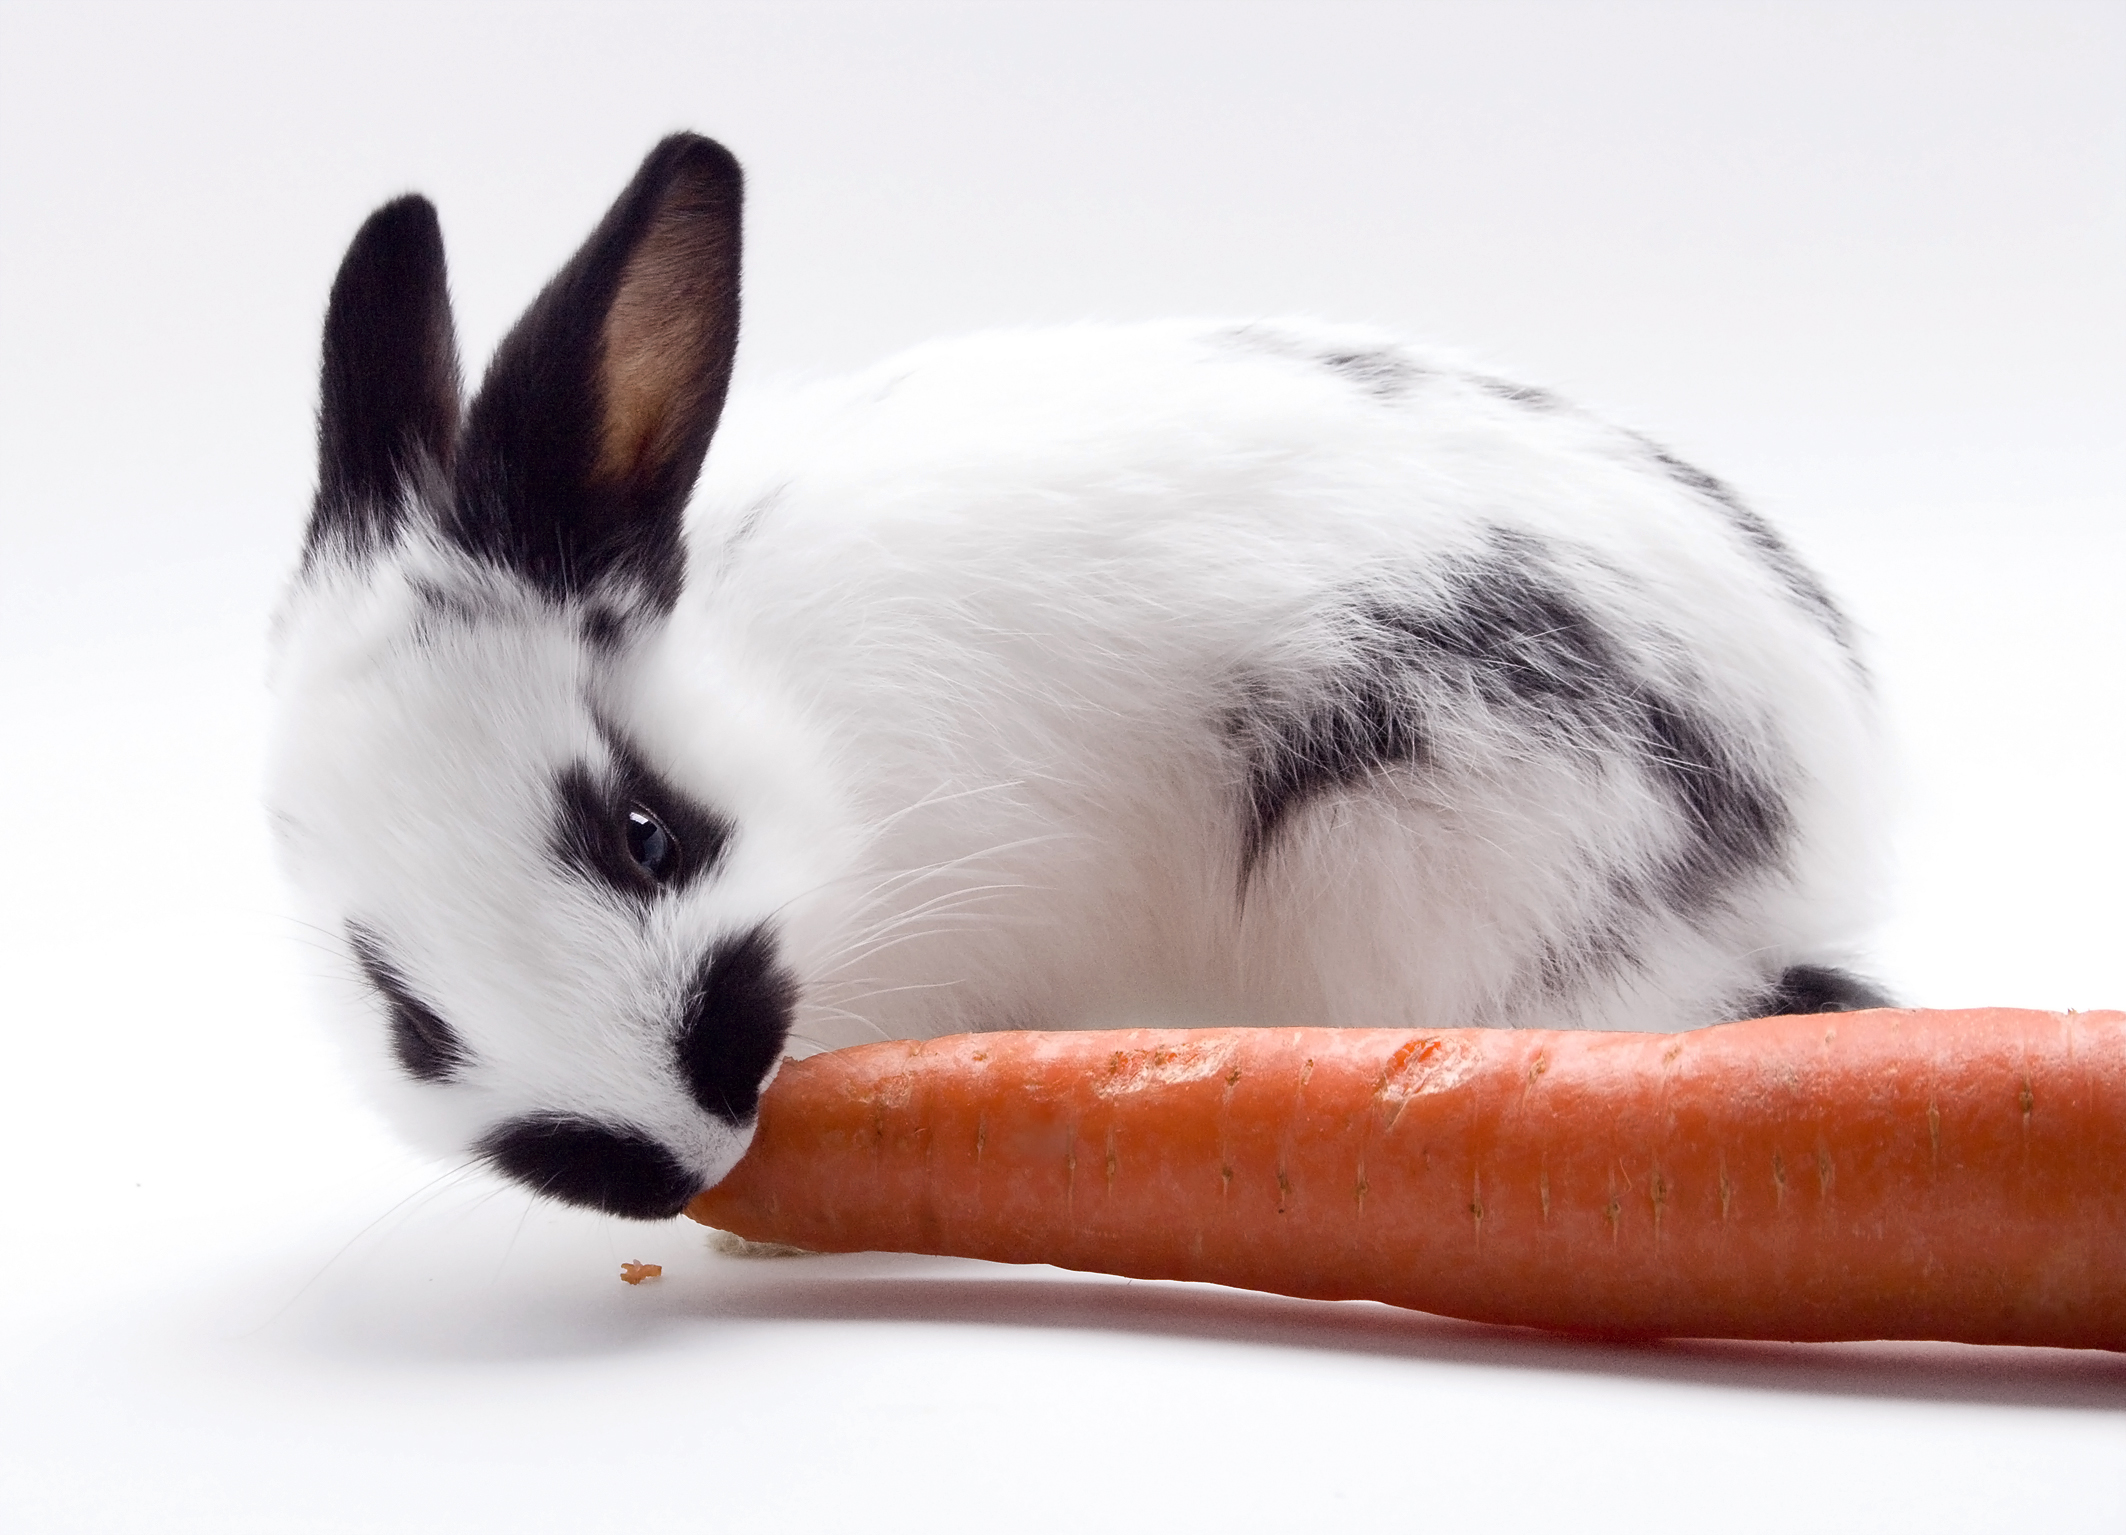 Weiß-schwarzes Kaninchen, das an einer Karotte knabbert 